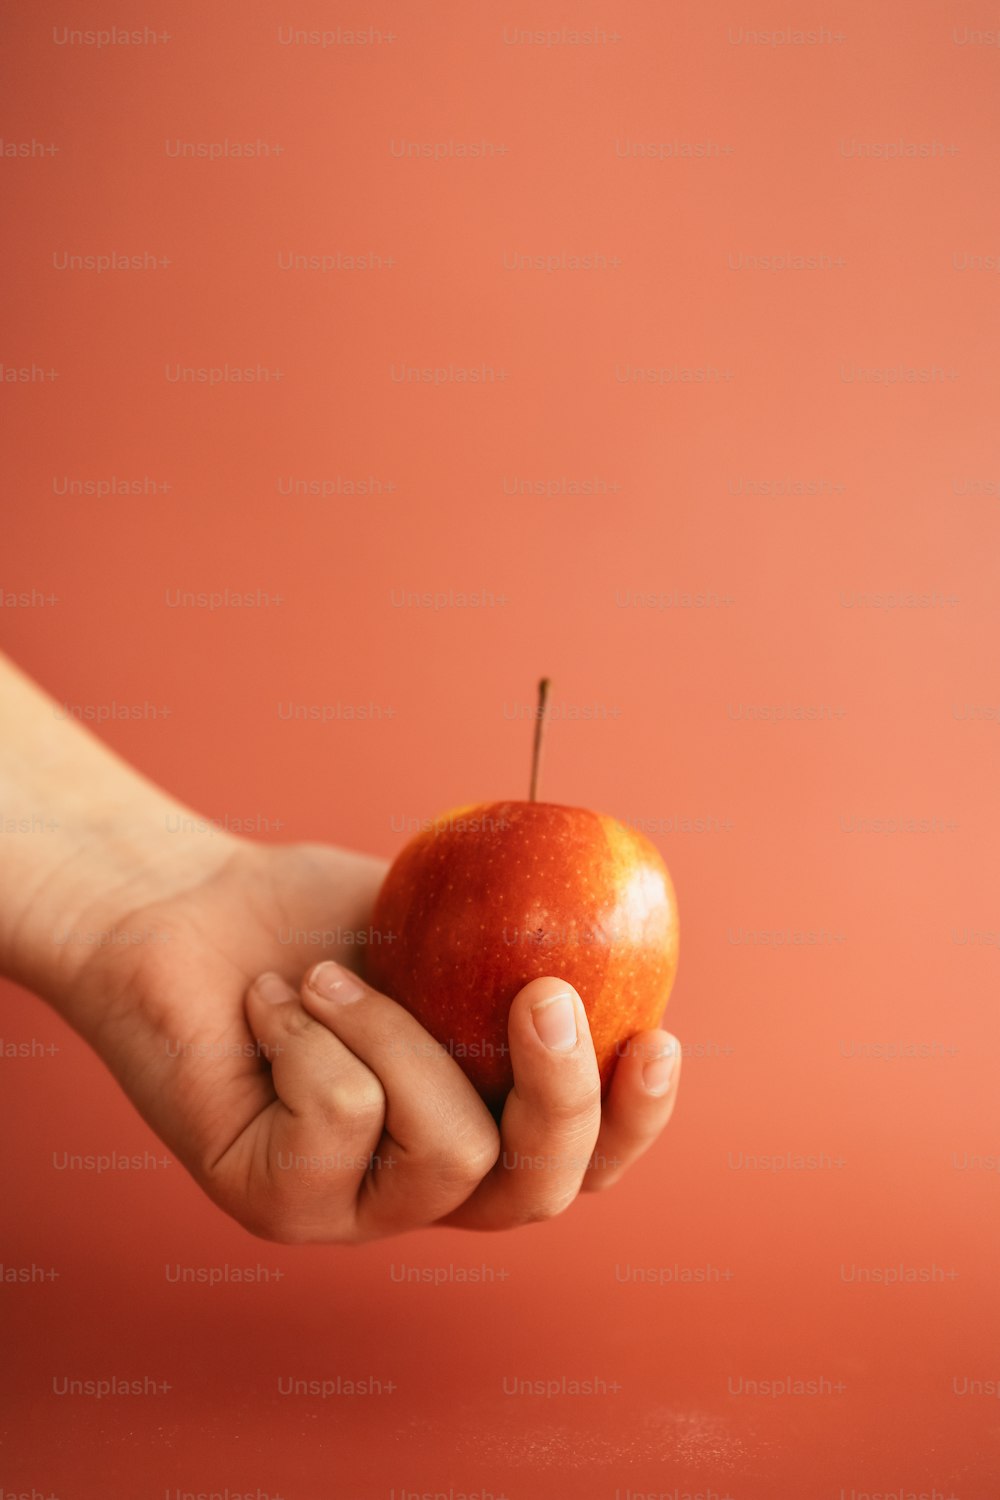 Eine Person, die einen Apfel in der Hand hält